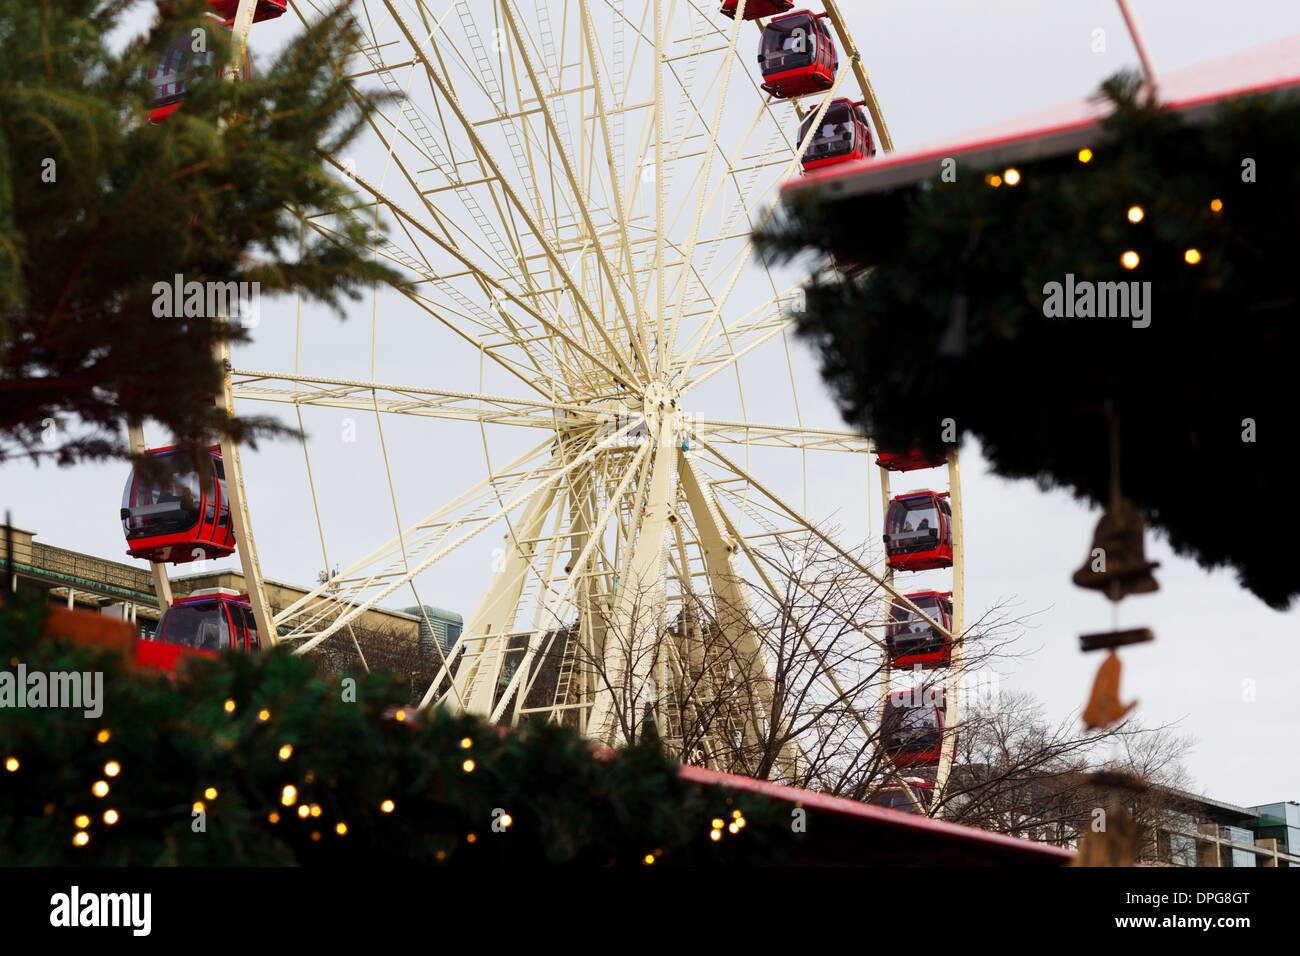 Edinburgh mercato invernale, negozi e la ruota panoramica Ferris Foto Stock